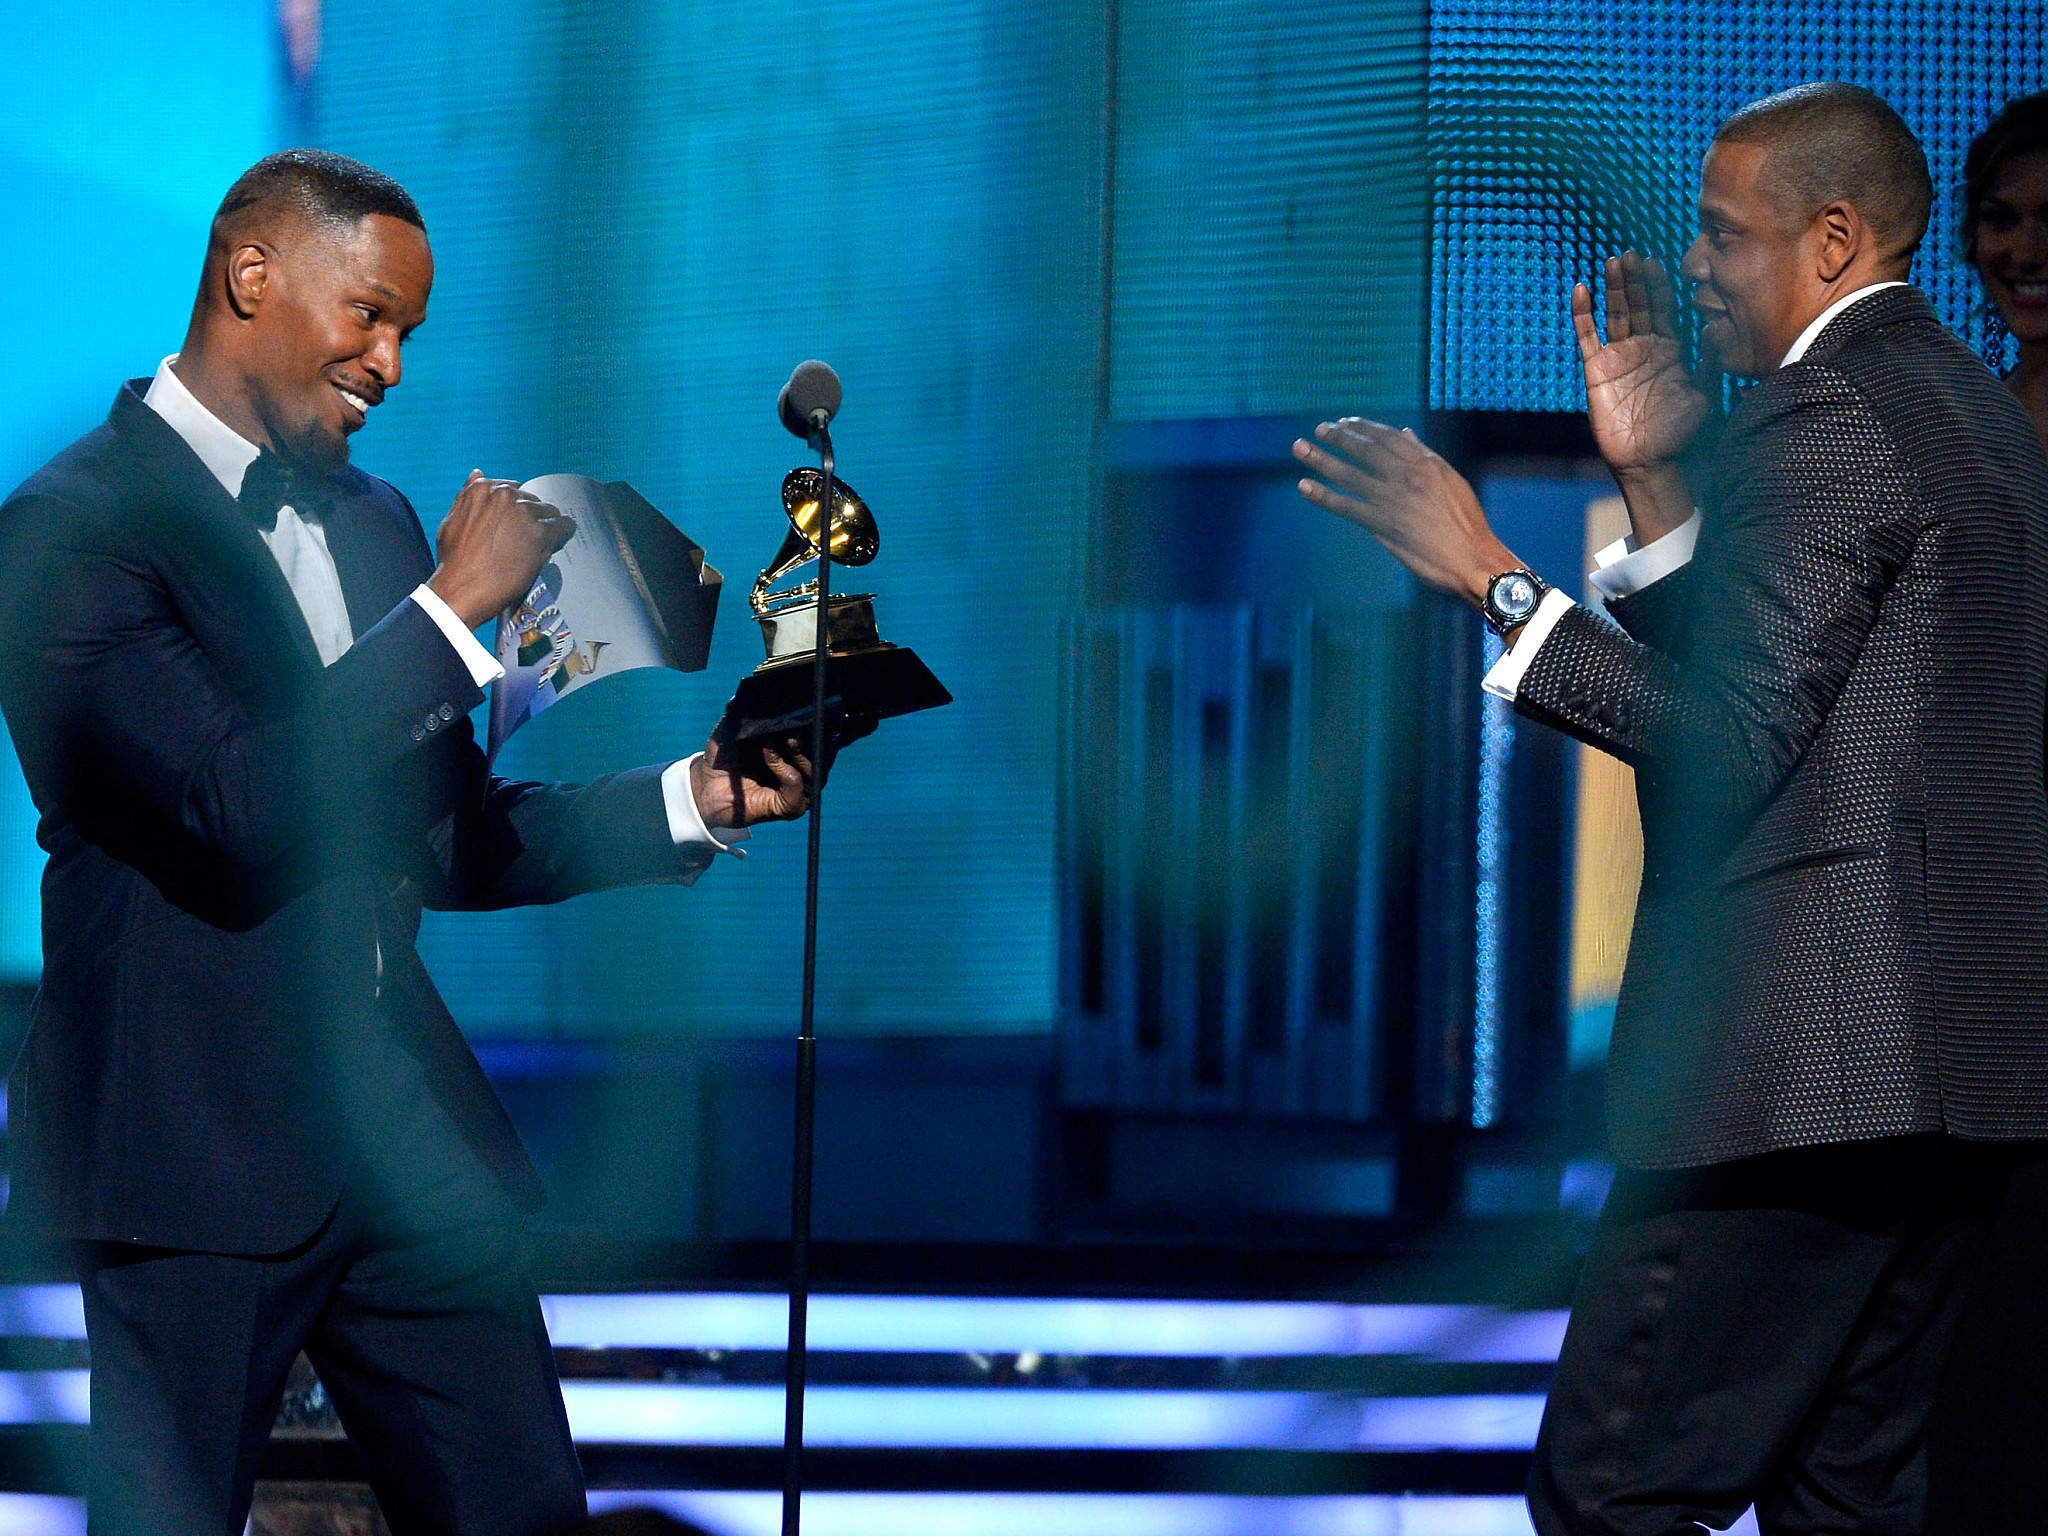 Grammy Awards 2014: Die Gewinner